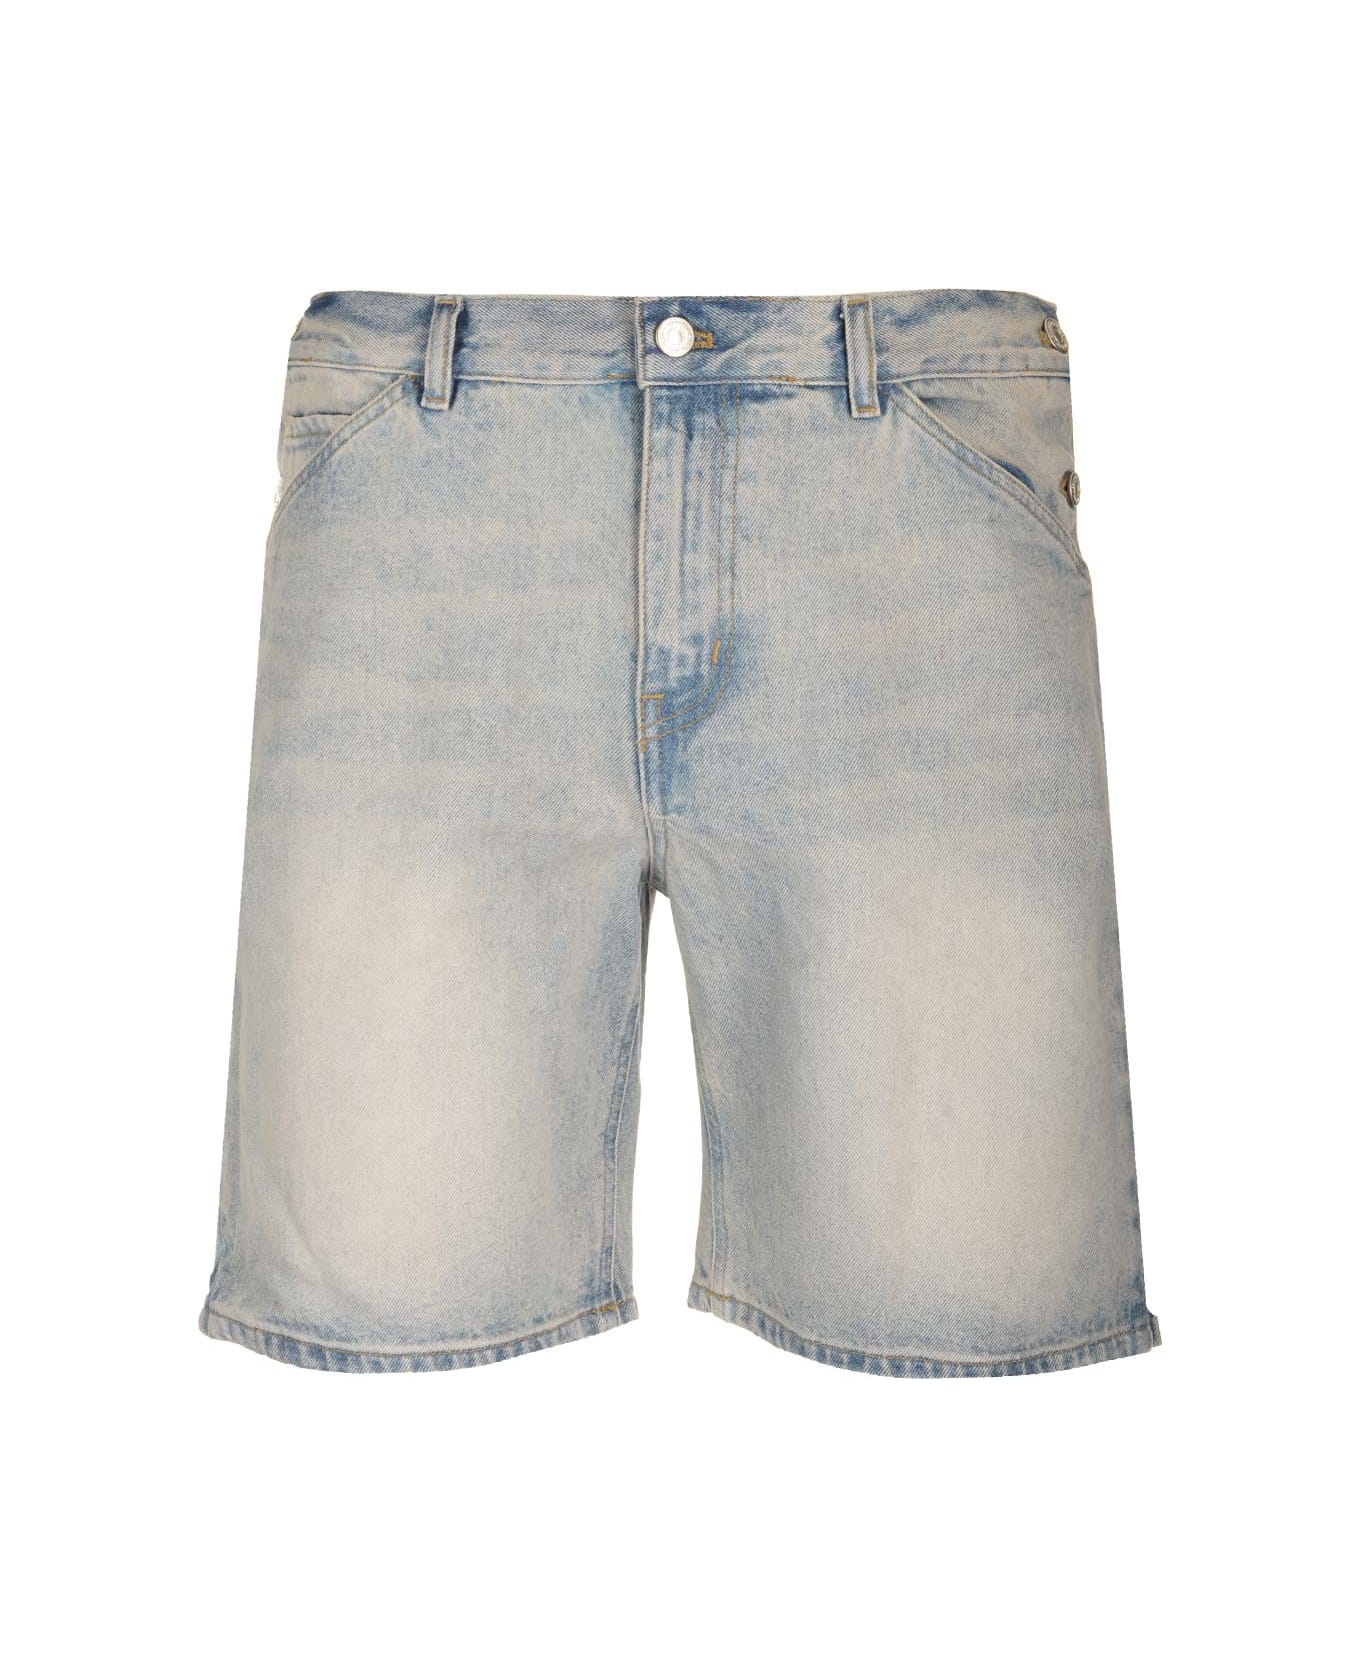 Courrèges 'sailor' Bermuda Shorts - Light Blue Wash